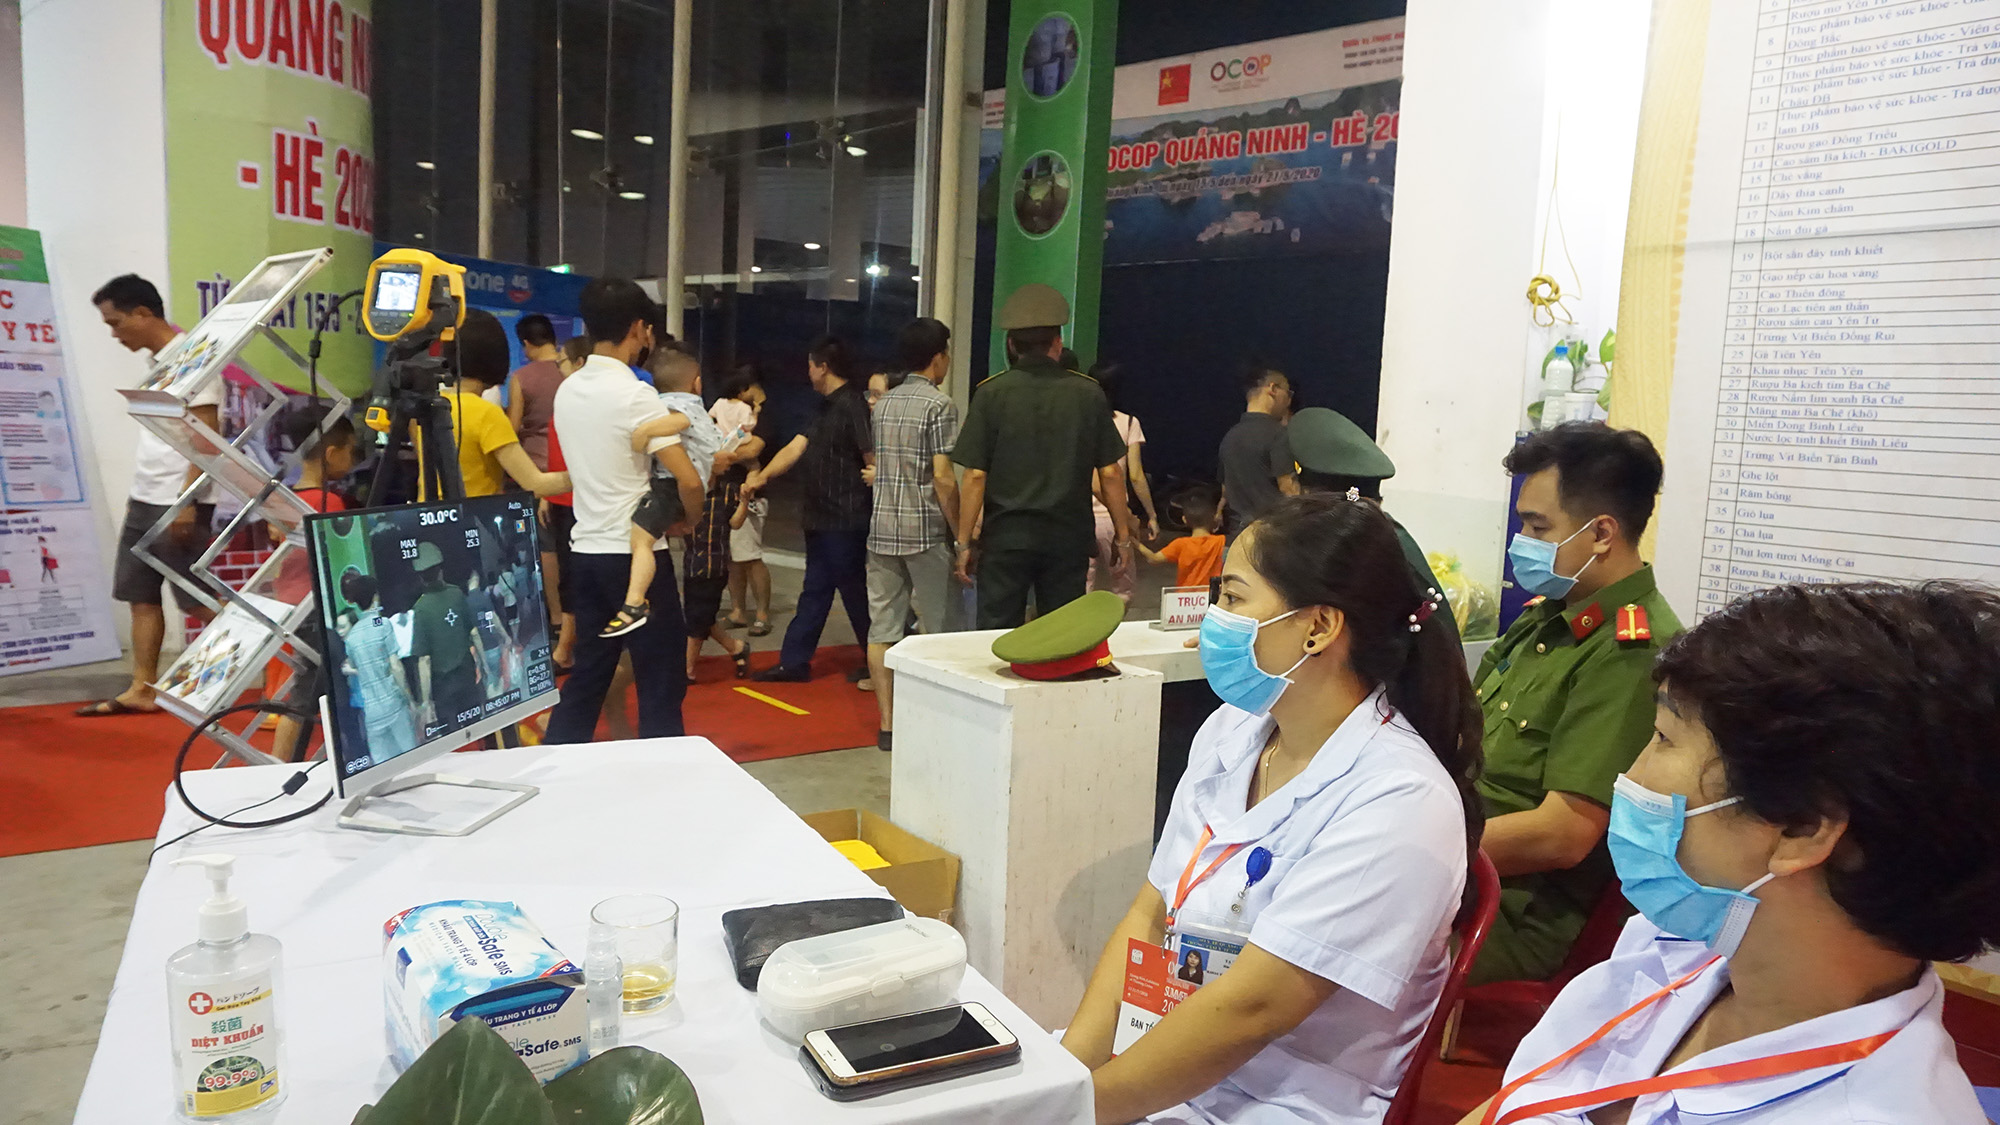 Công tác kiểm tra y tế được thực hiện nghiêm ngặt và xuyên suốt trong quá trình diễn rã hội chợ OCOP Quảng Ninh - Hè 2020.